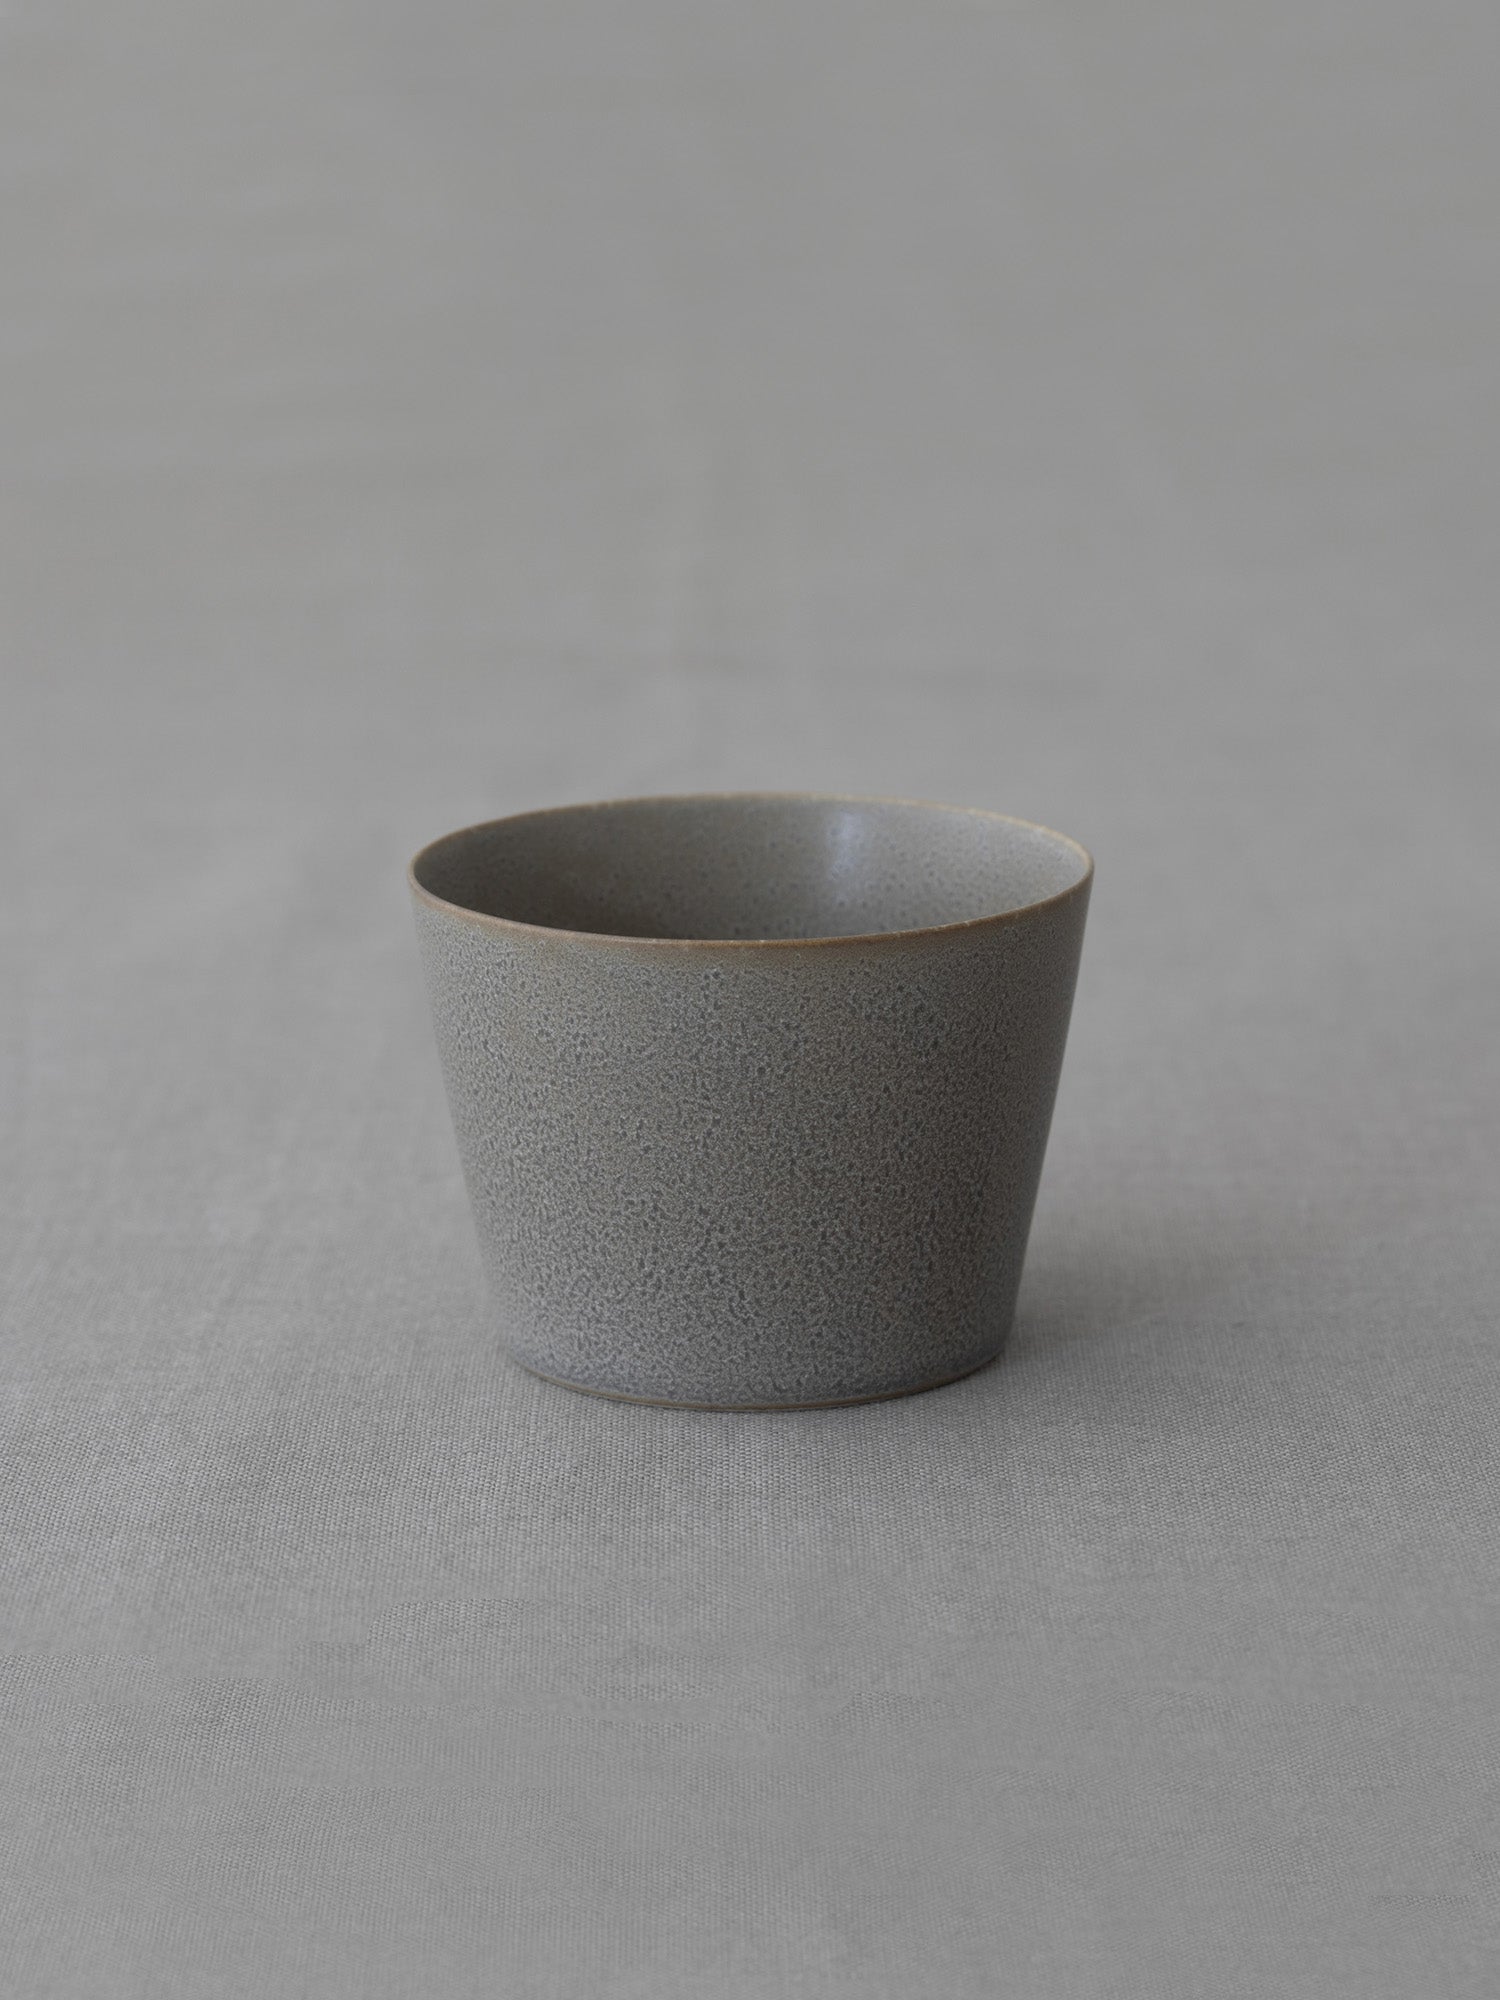 yumiko iihoshi porcelain